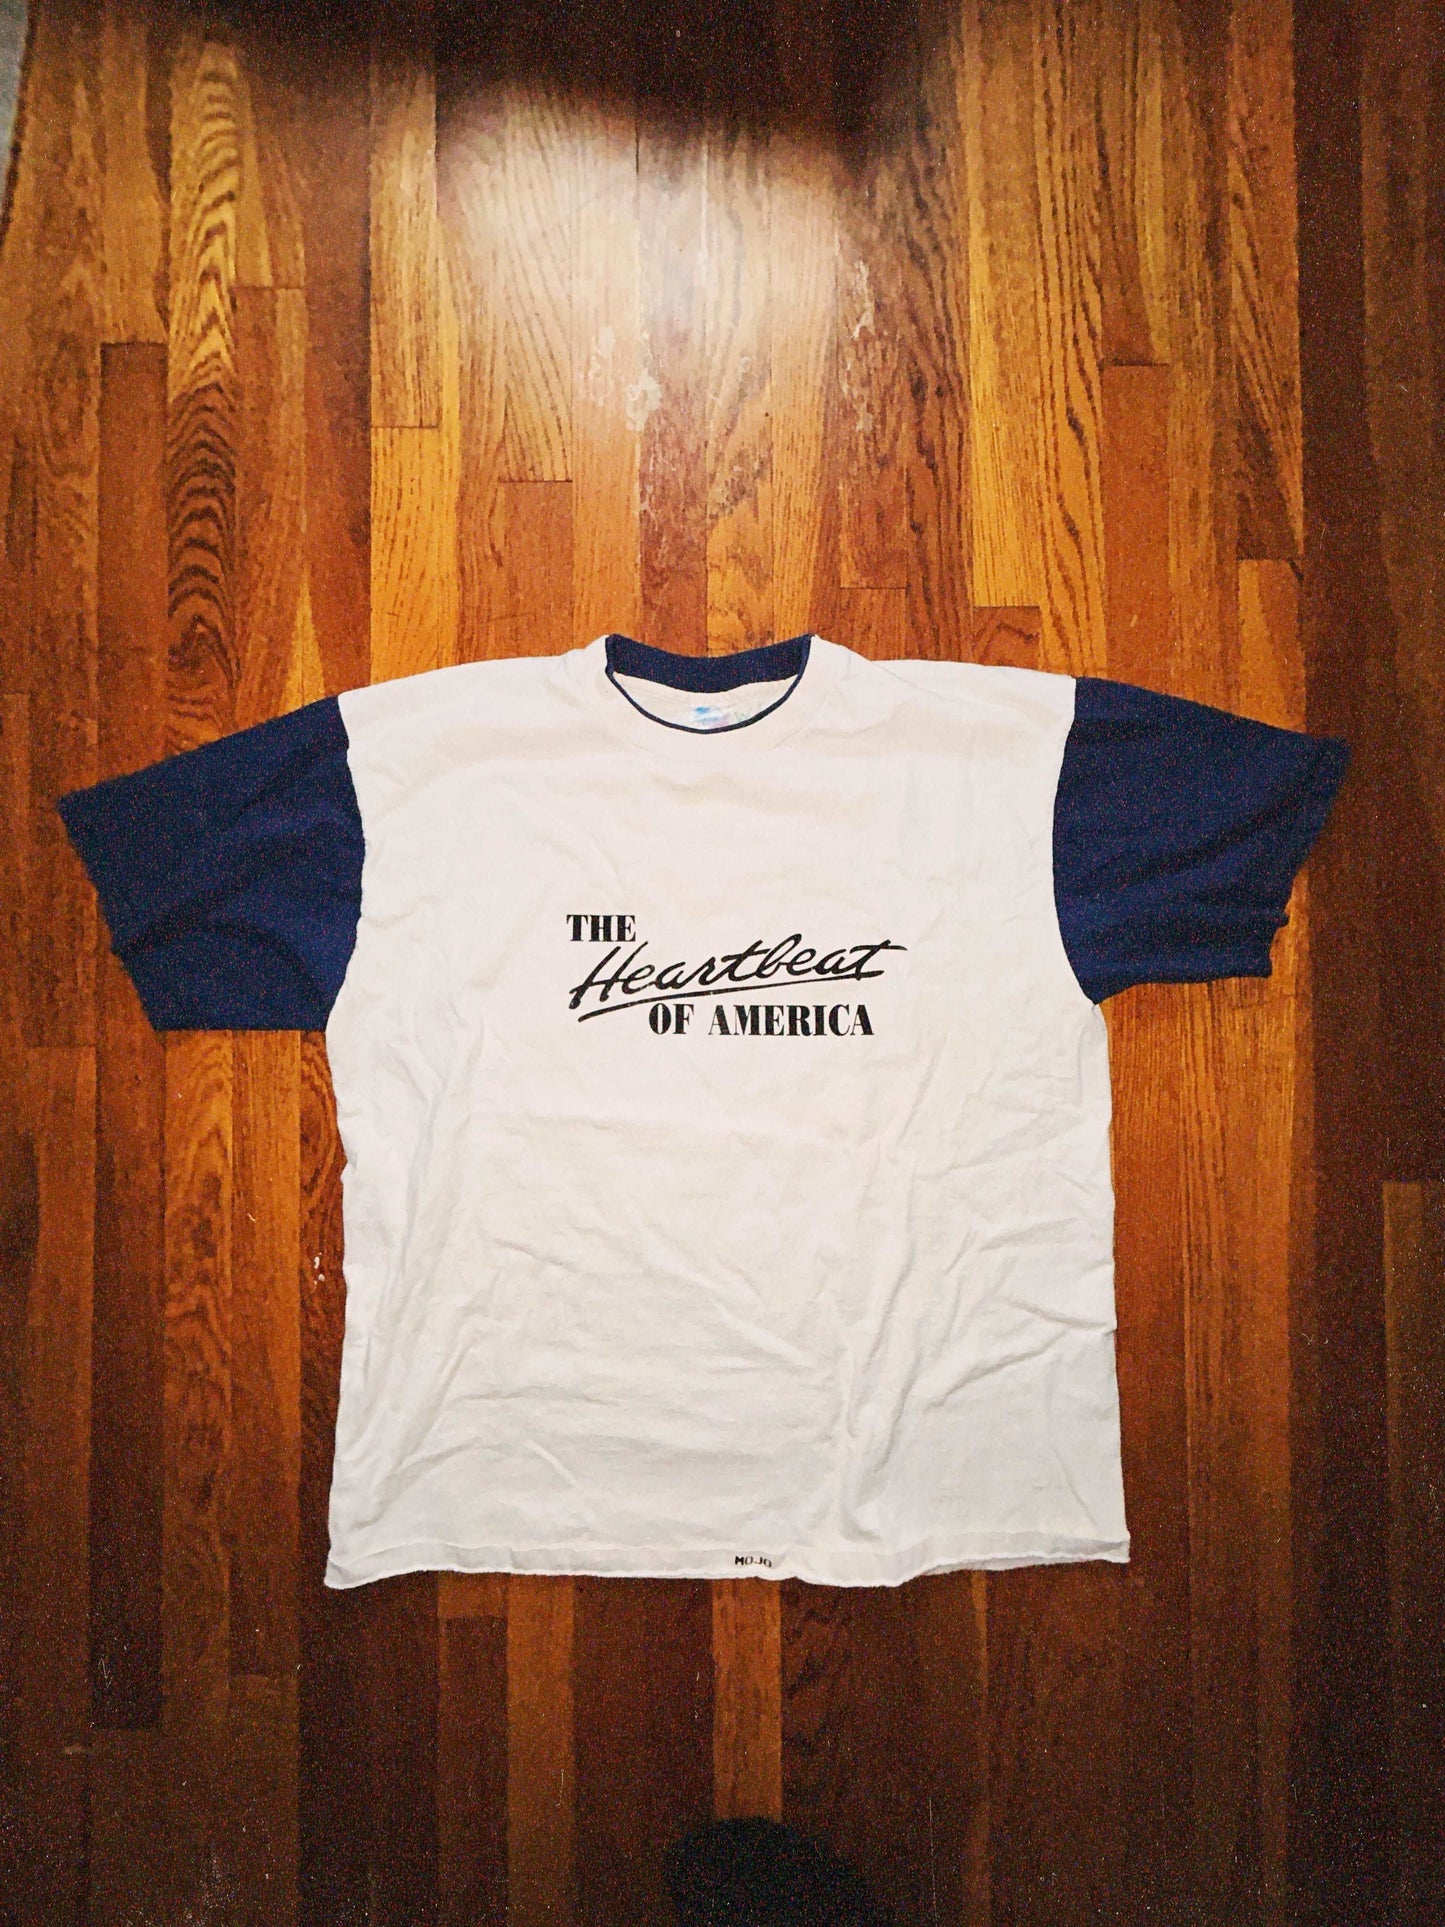 Heartbeat of America T-Shirt Size - XL